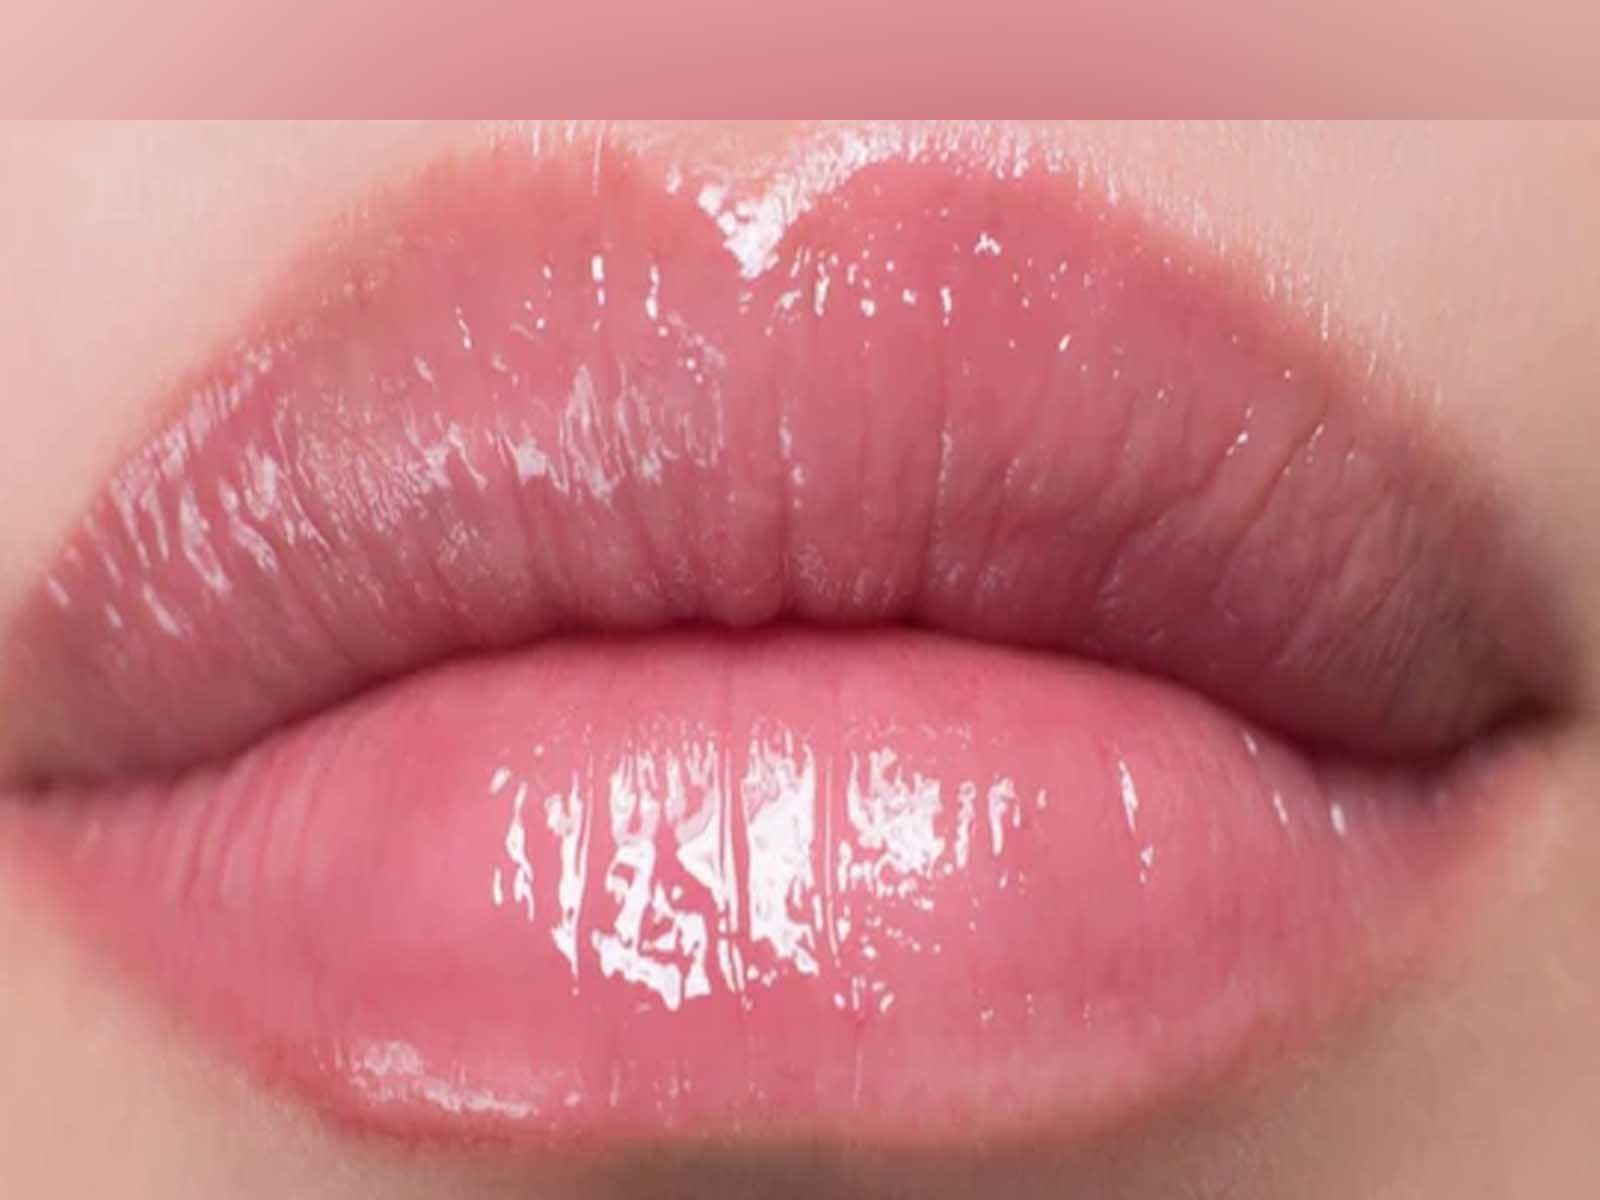 Beetroot For Lips: ਜੇ ਵਾਰ-ਵਾਰ ਸੁੱਕ ਜਾਂਦੇ ਹਨ ਬੁੱਲ੍ਹ ਤਾਂ ਵਰਤੋ ਚੁਕੰਦਰ, ਮਿਲੇਗਾ ਪੋਸ਼ਣ